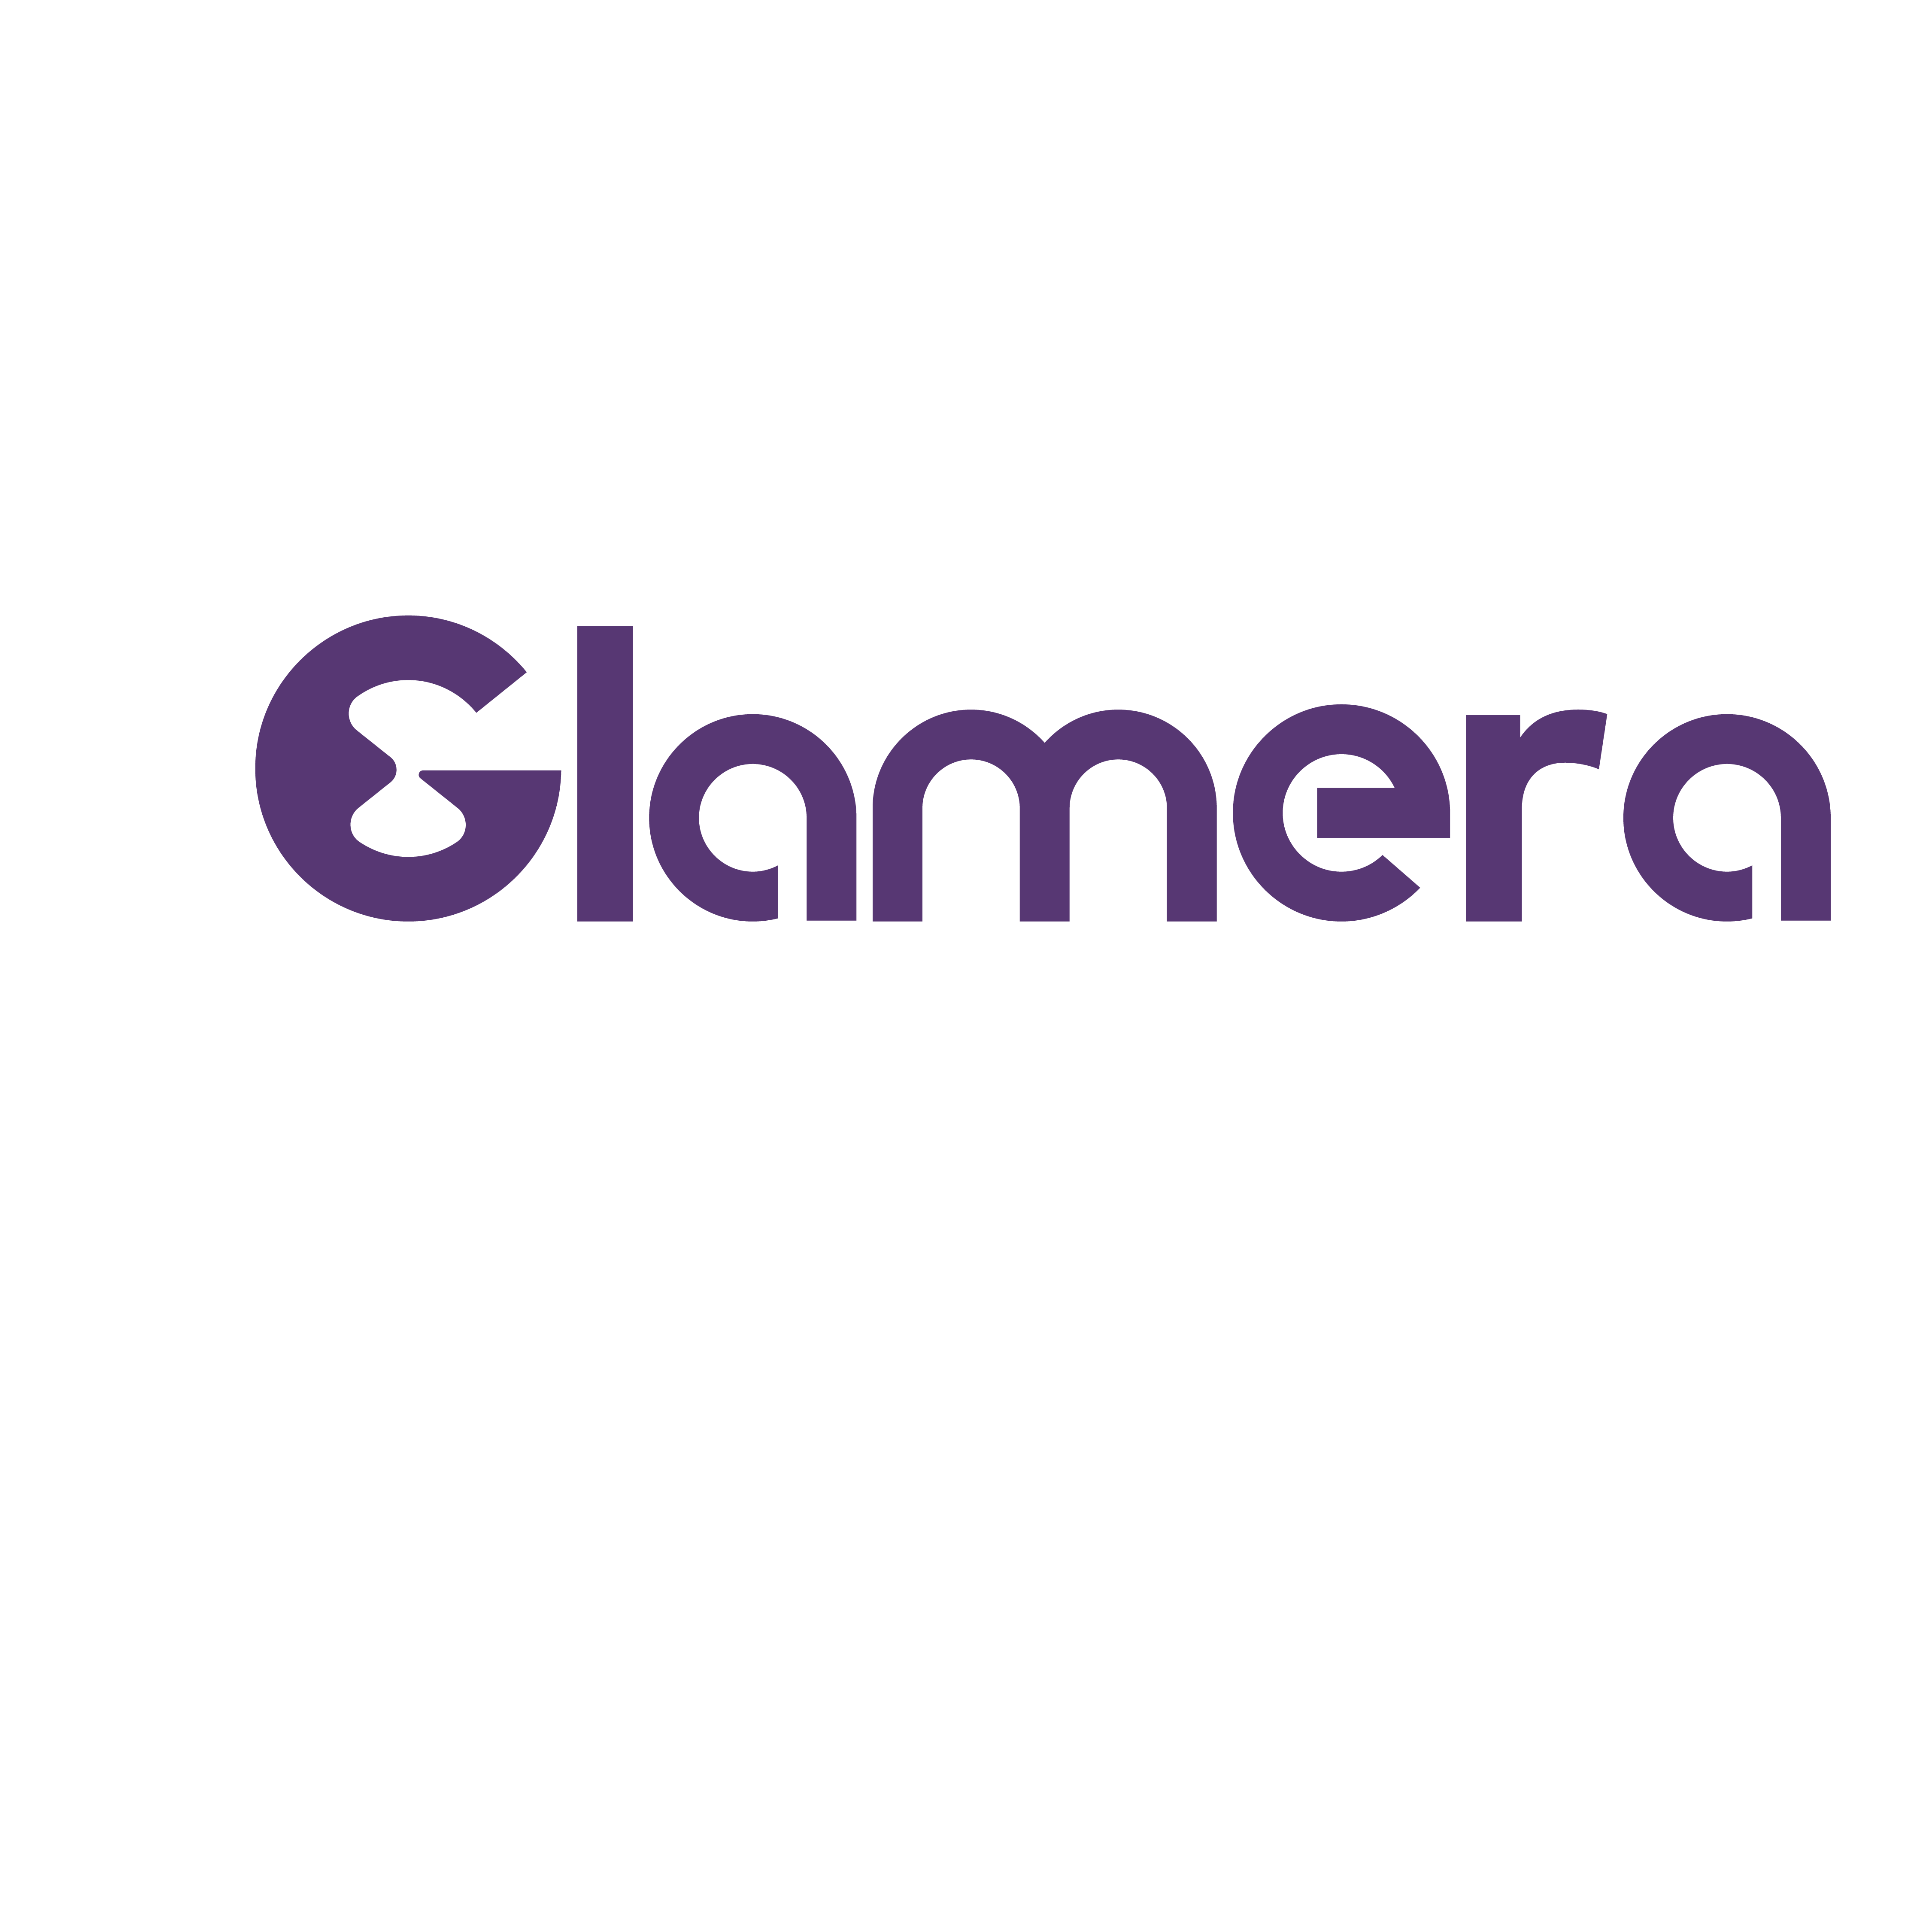 معقمة بالكامل” مبادرة تطلقها Glamera لمواجهة كورونا